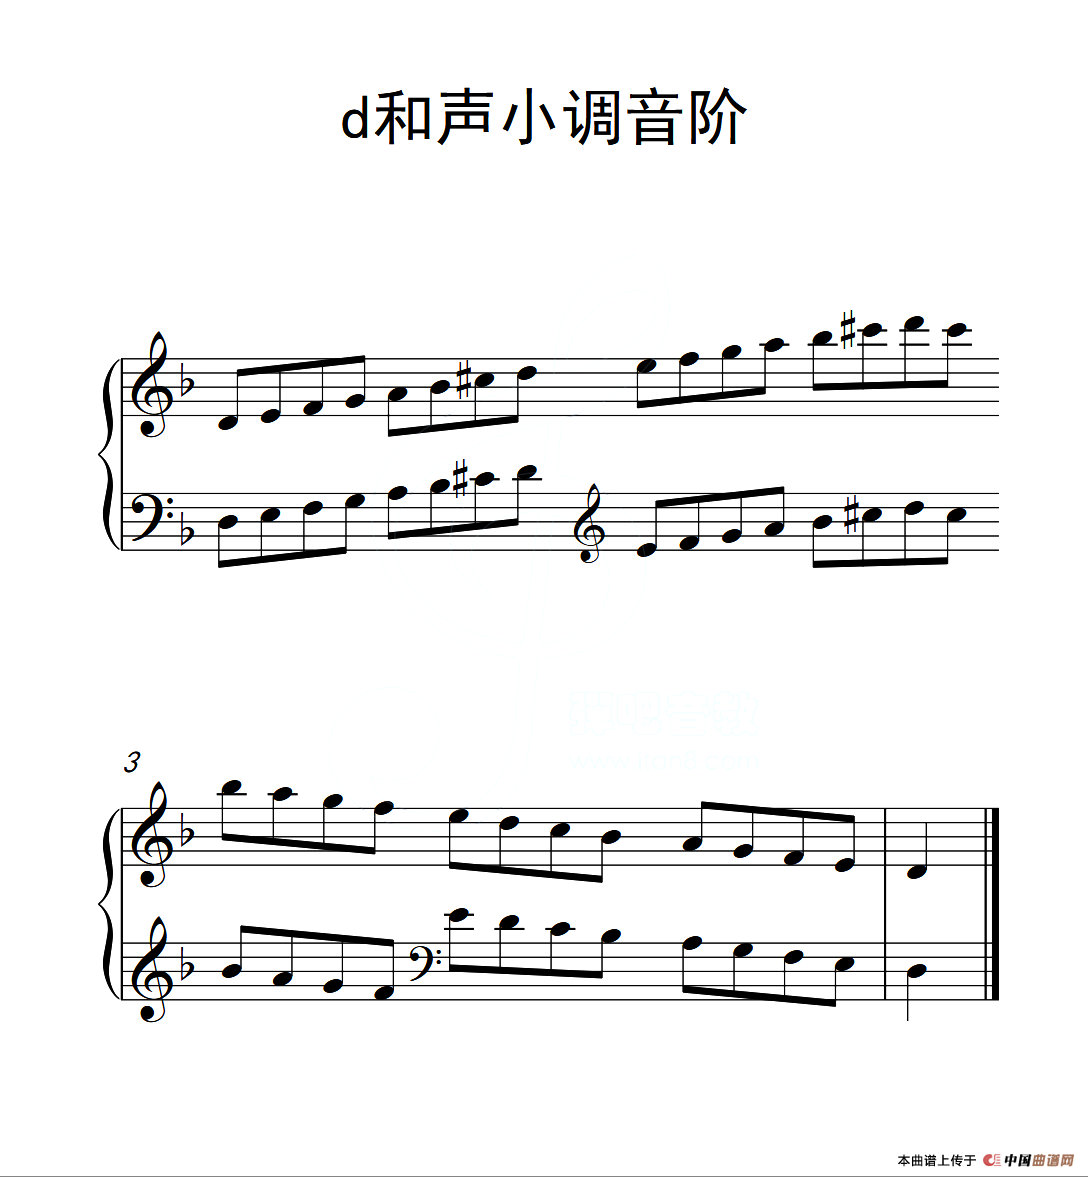 [钢琴谱] 第一级 d和声小调音阶